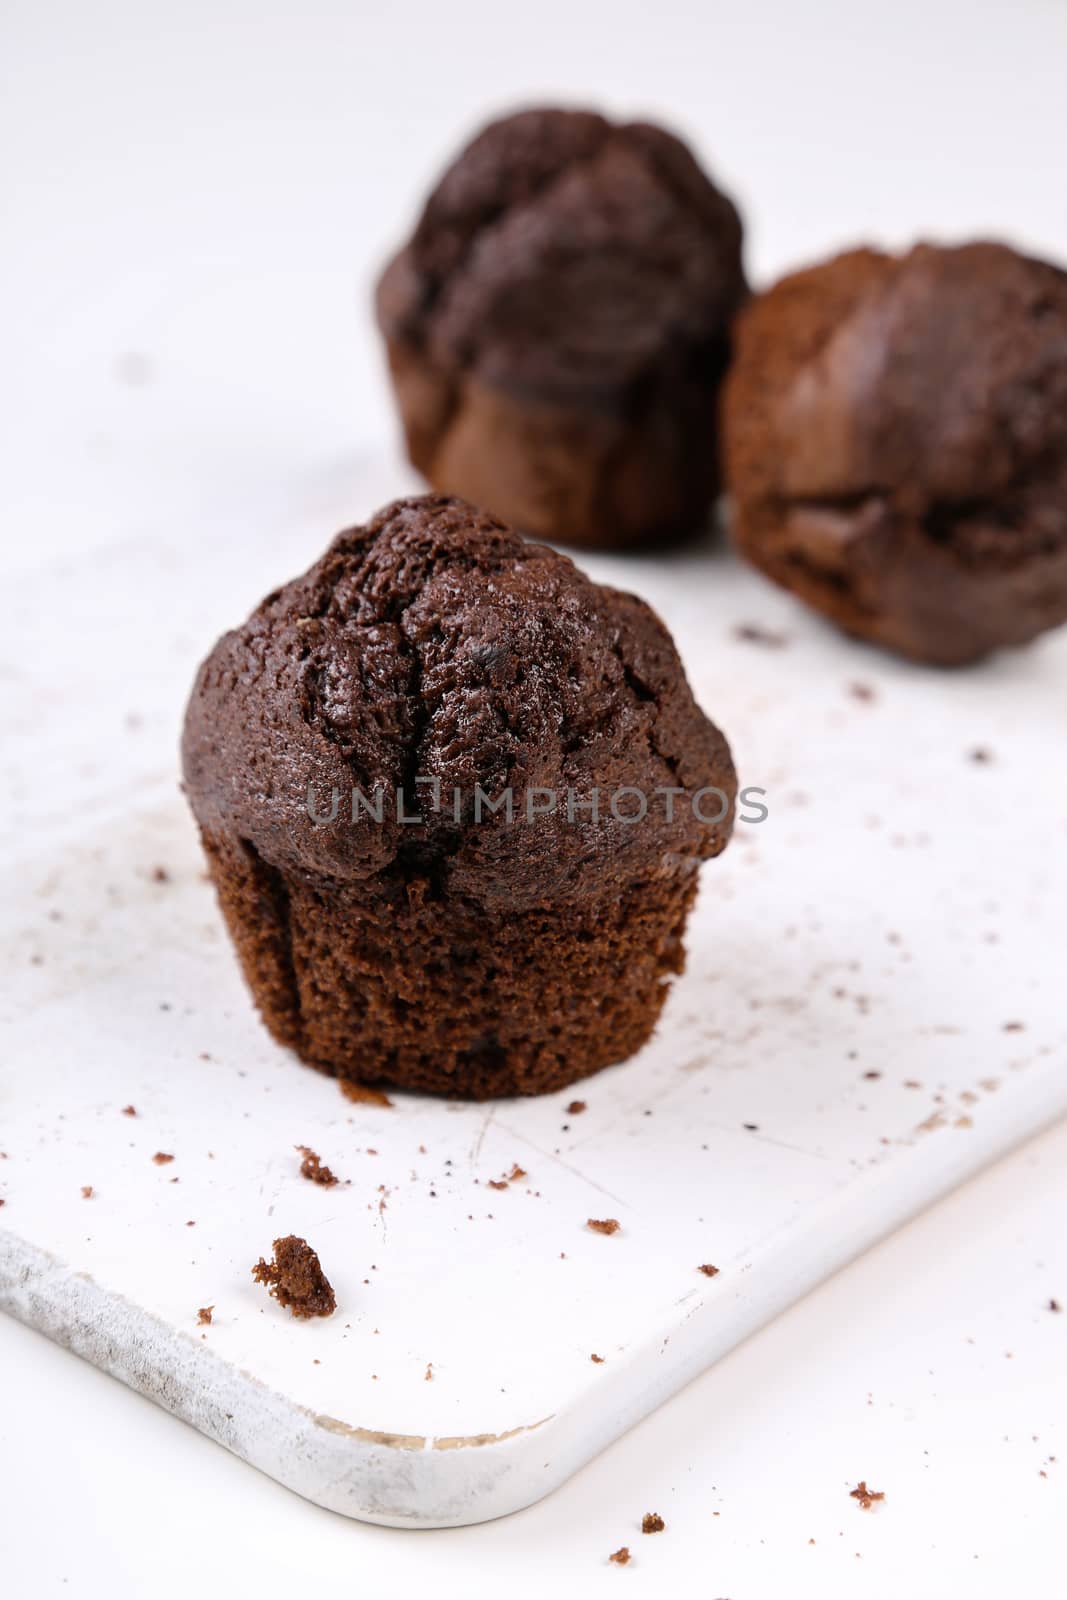 Delicious muffin by rufatjumali